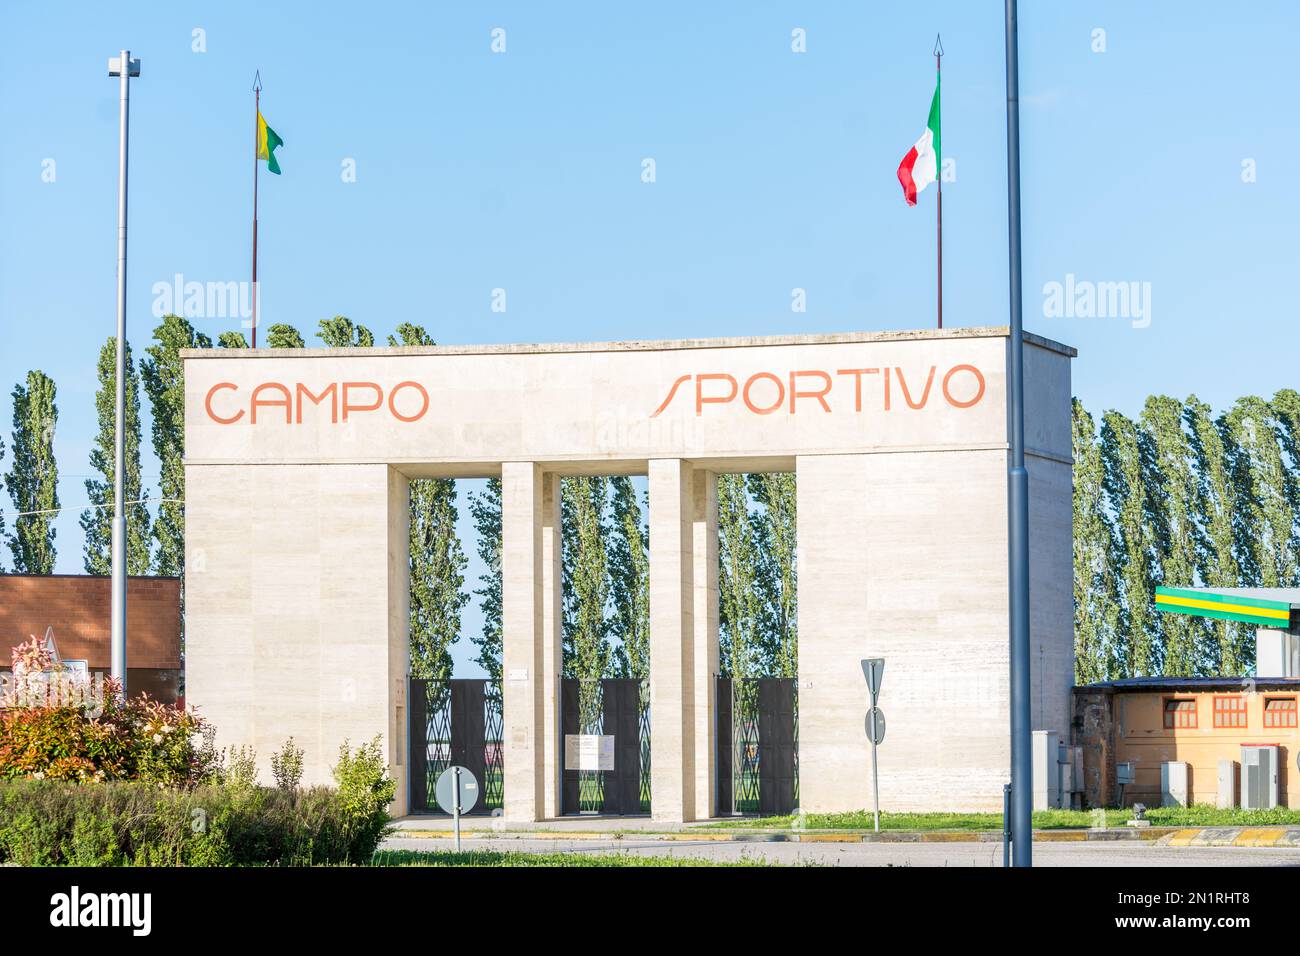 Tresigallo,Italia-2 maggio 2021:passeggiati tra gli edifici storici di Tresigallo in una giornata nuvolosa Foto Stock